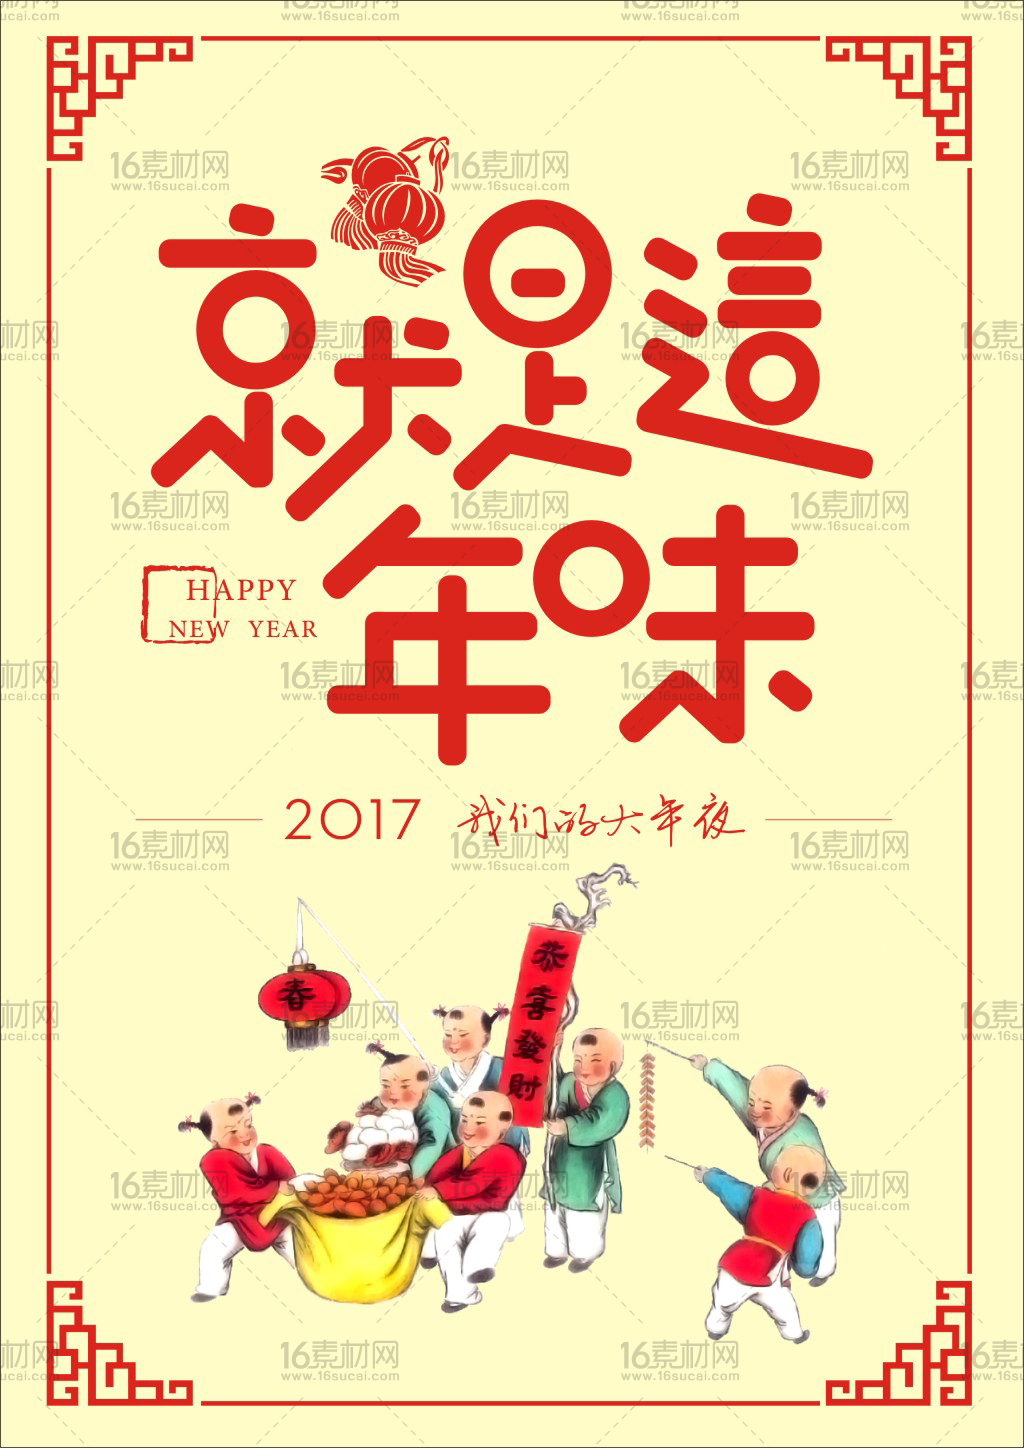 中式卡通创意2017春节海报CDR矢量素材